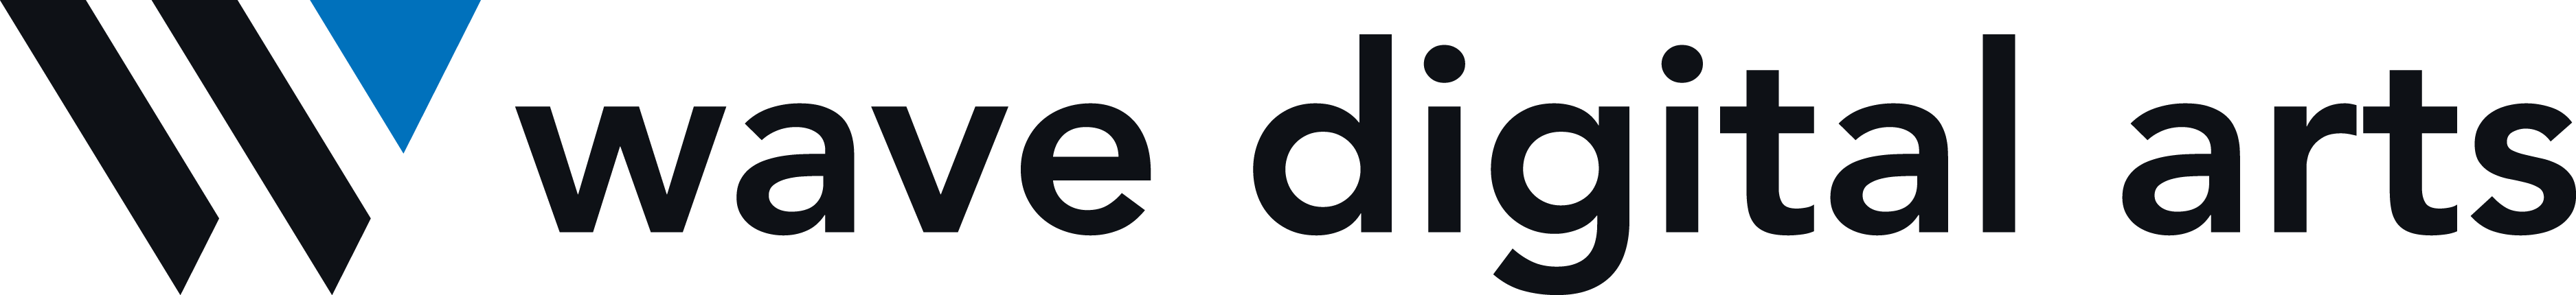 Linked logo for Wave Digital Arts Ltd.